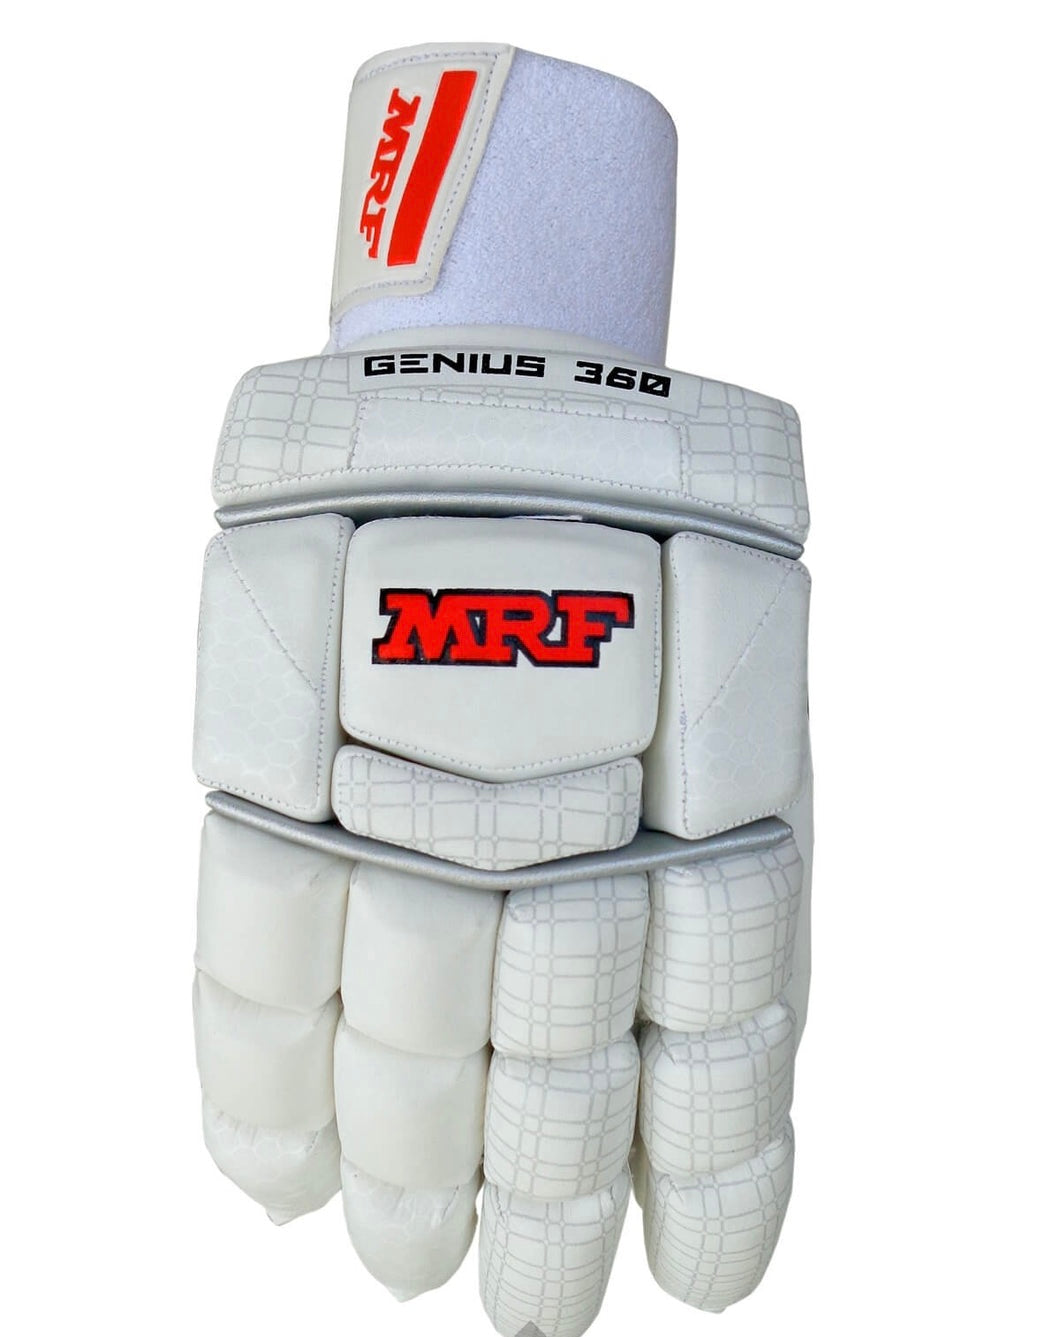 MRF Genius 360 Batting Gloves